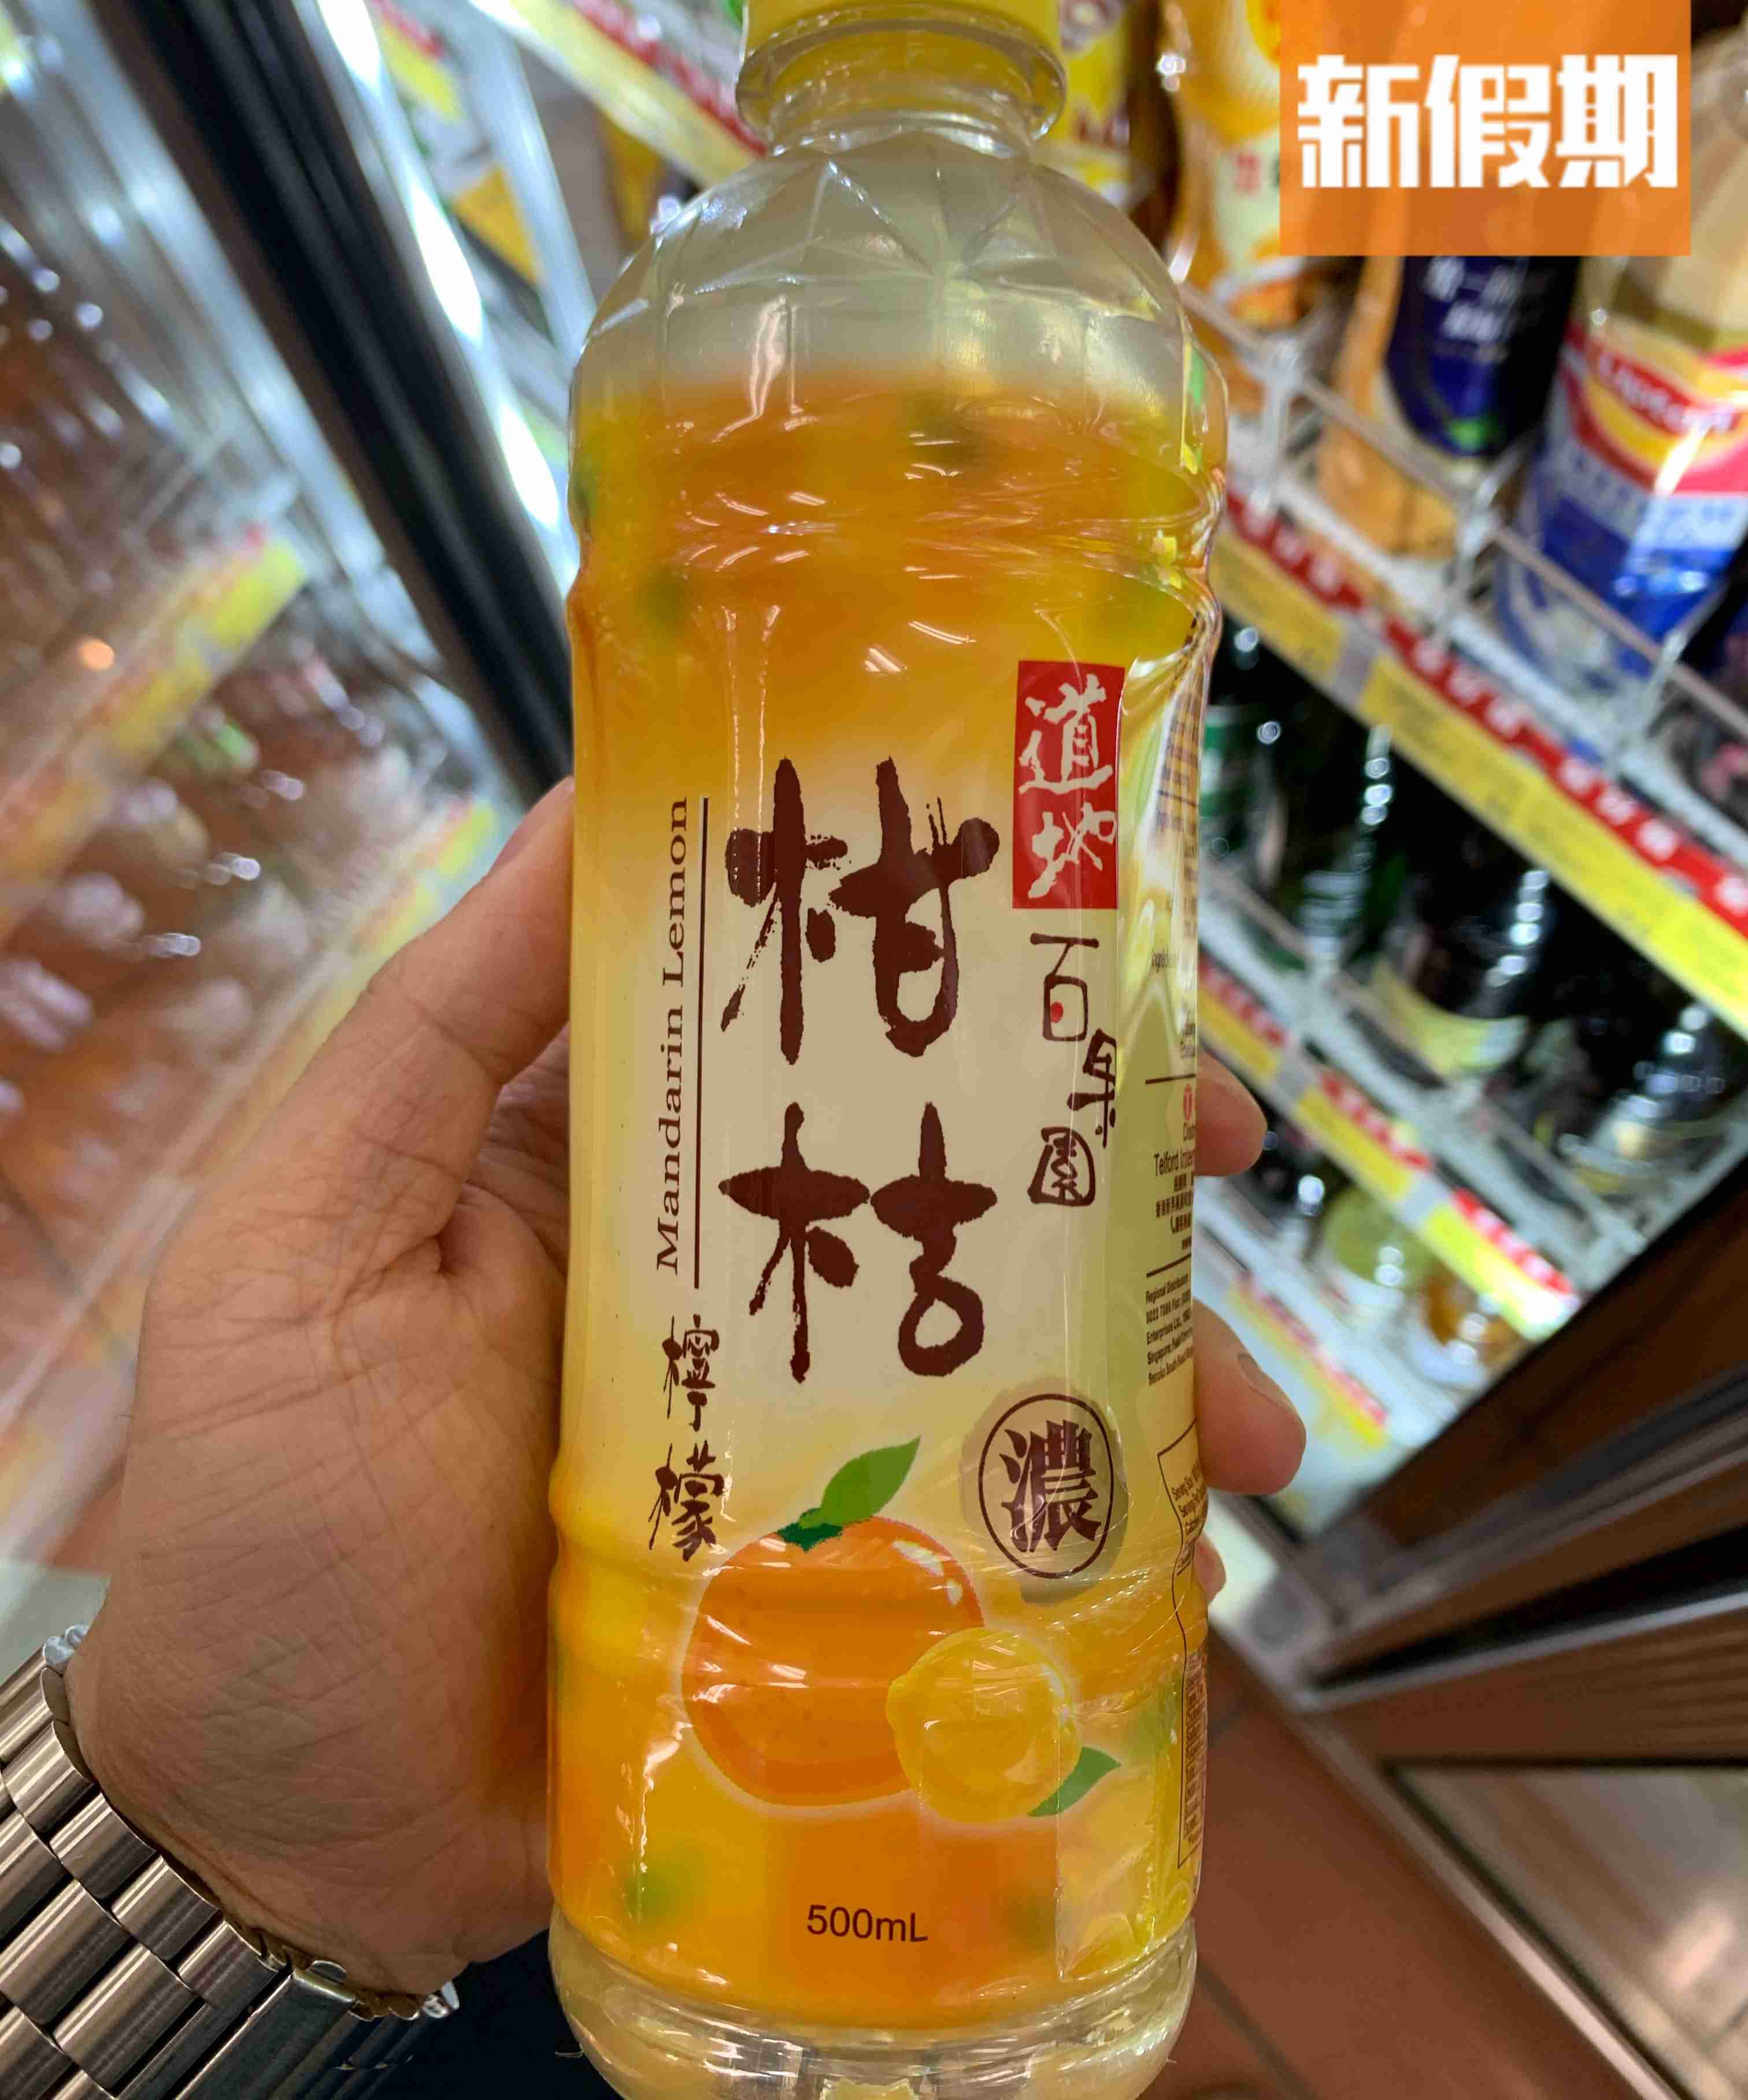 道地柑桔檸檬 500ml/.5 (OK便利店)